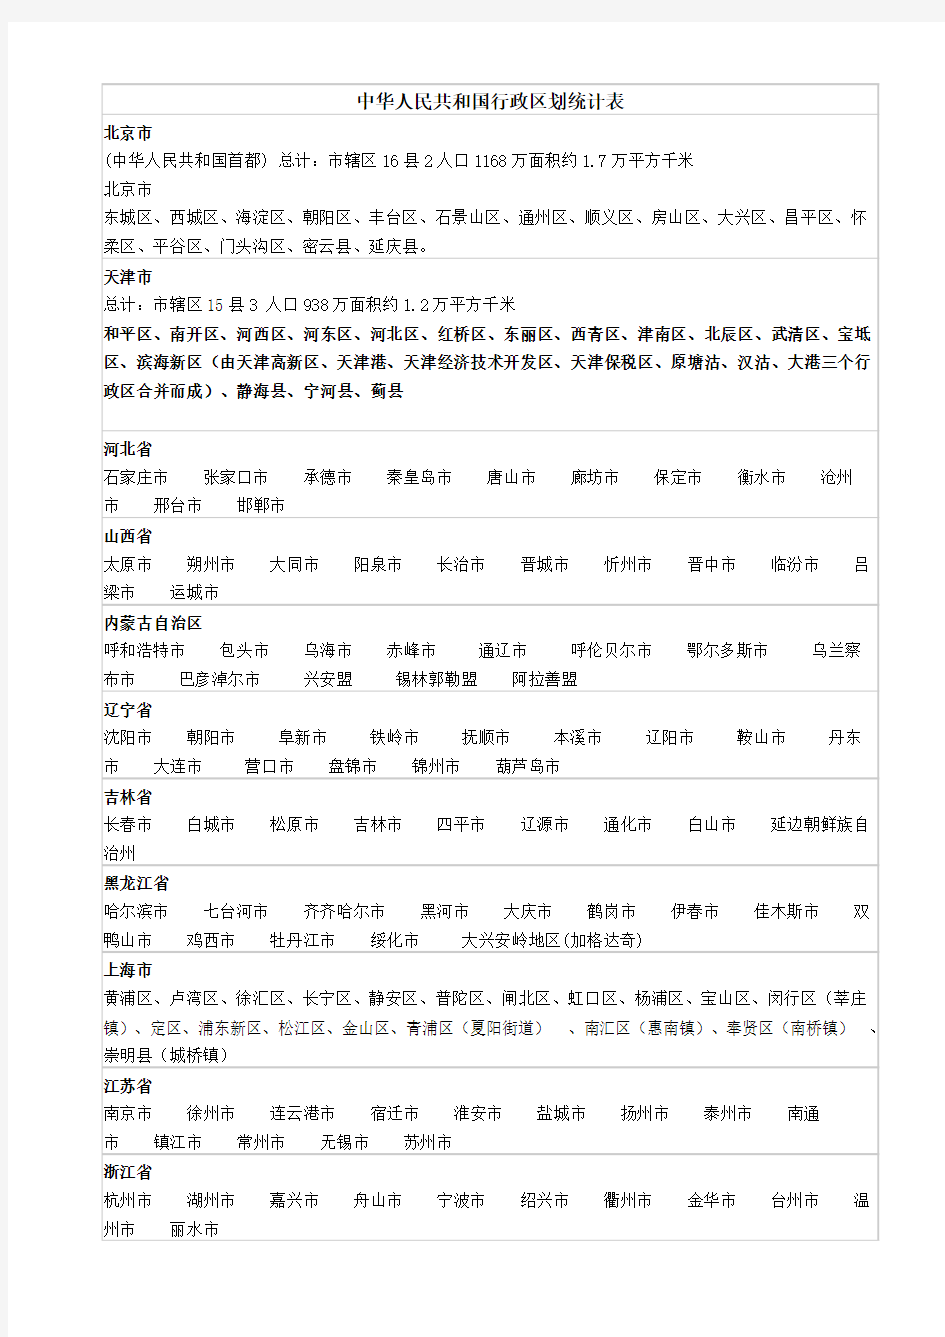 中华人民共和国行政区划统计表